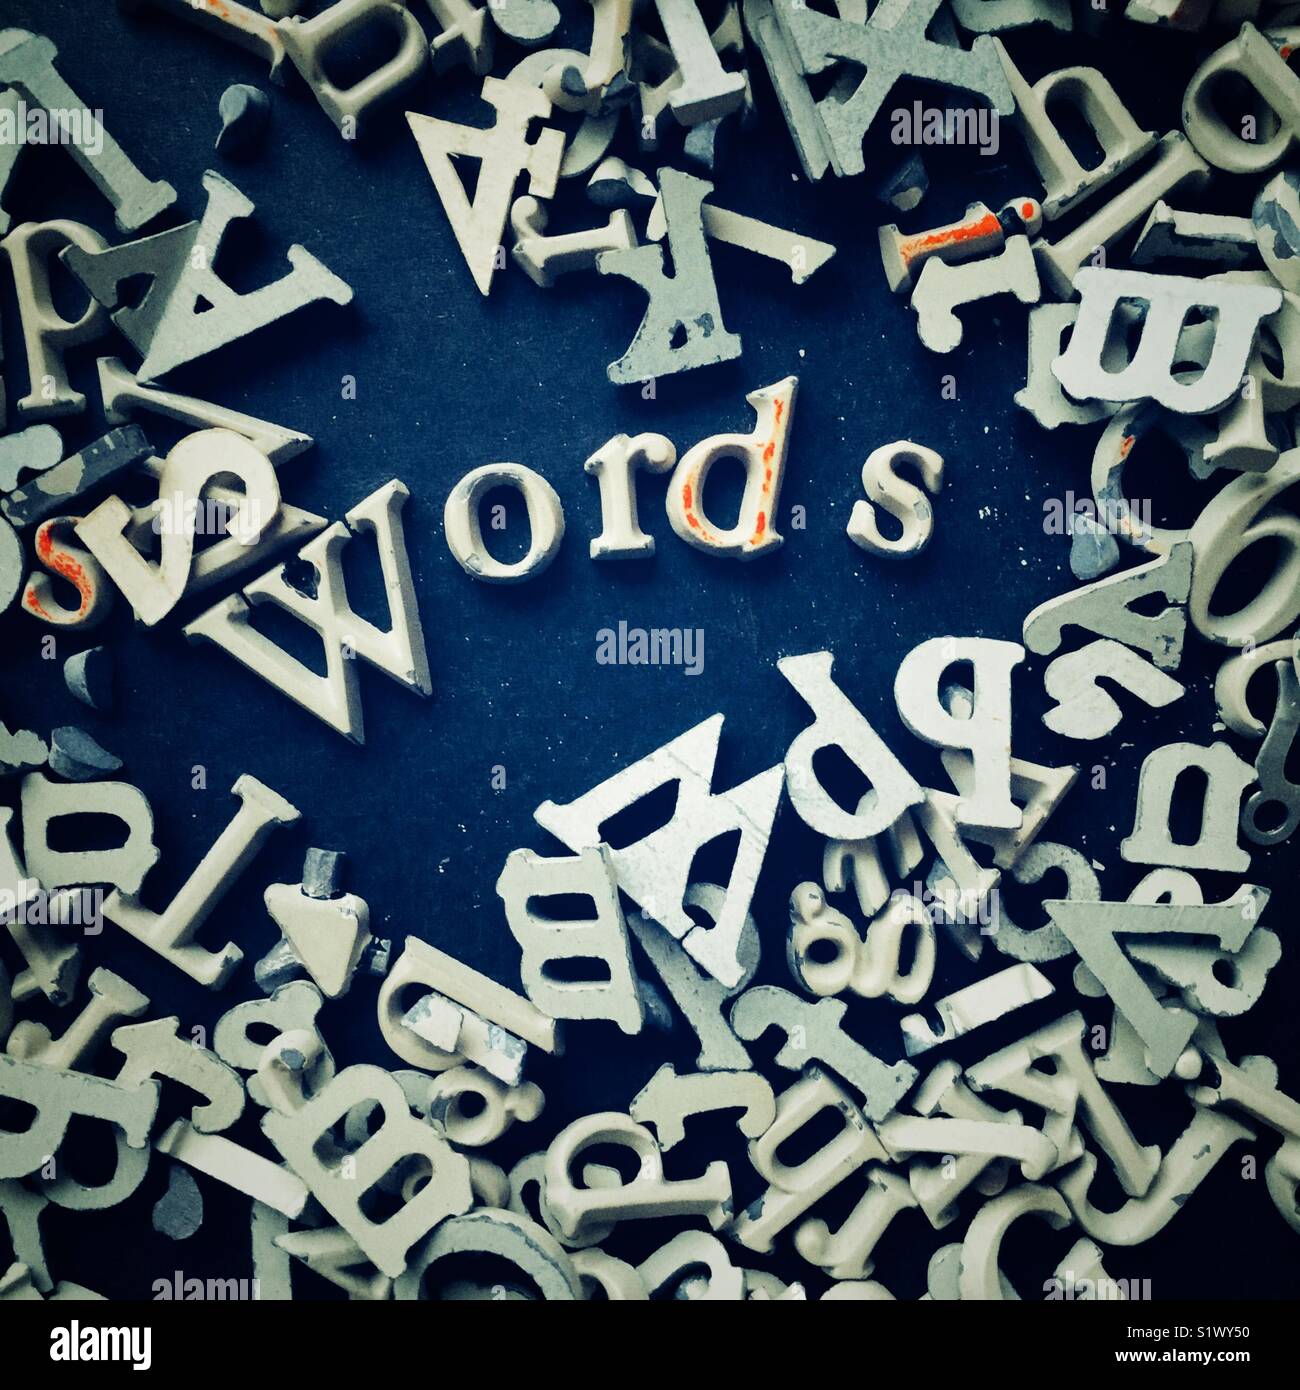 Wort Wörter in kleinen Metall serif Briefe durch Stapel von Briefen umgeben geschrieben Stockfoto